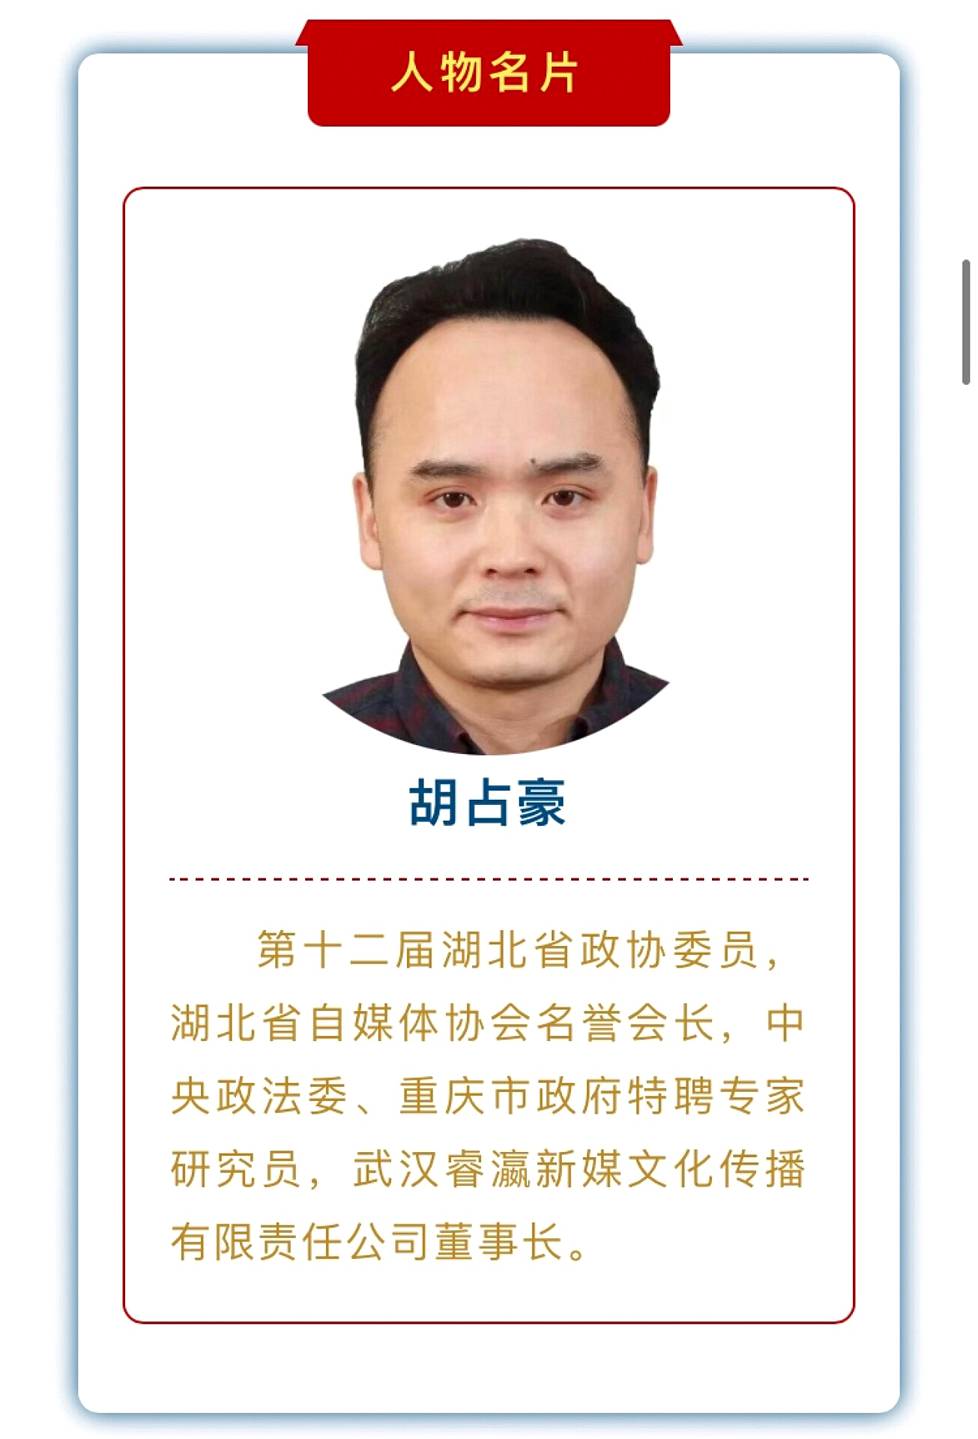 Hu Zhanhaon poliittisten toimien listalla on muun muassa Hubein maakunnan neuvoa-antavan kansankonferenssin jäsenyys.